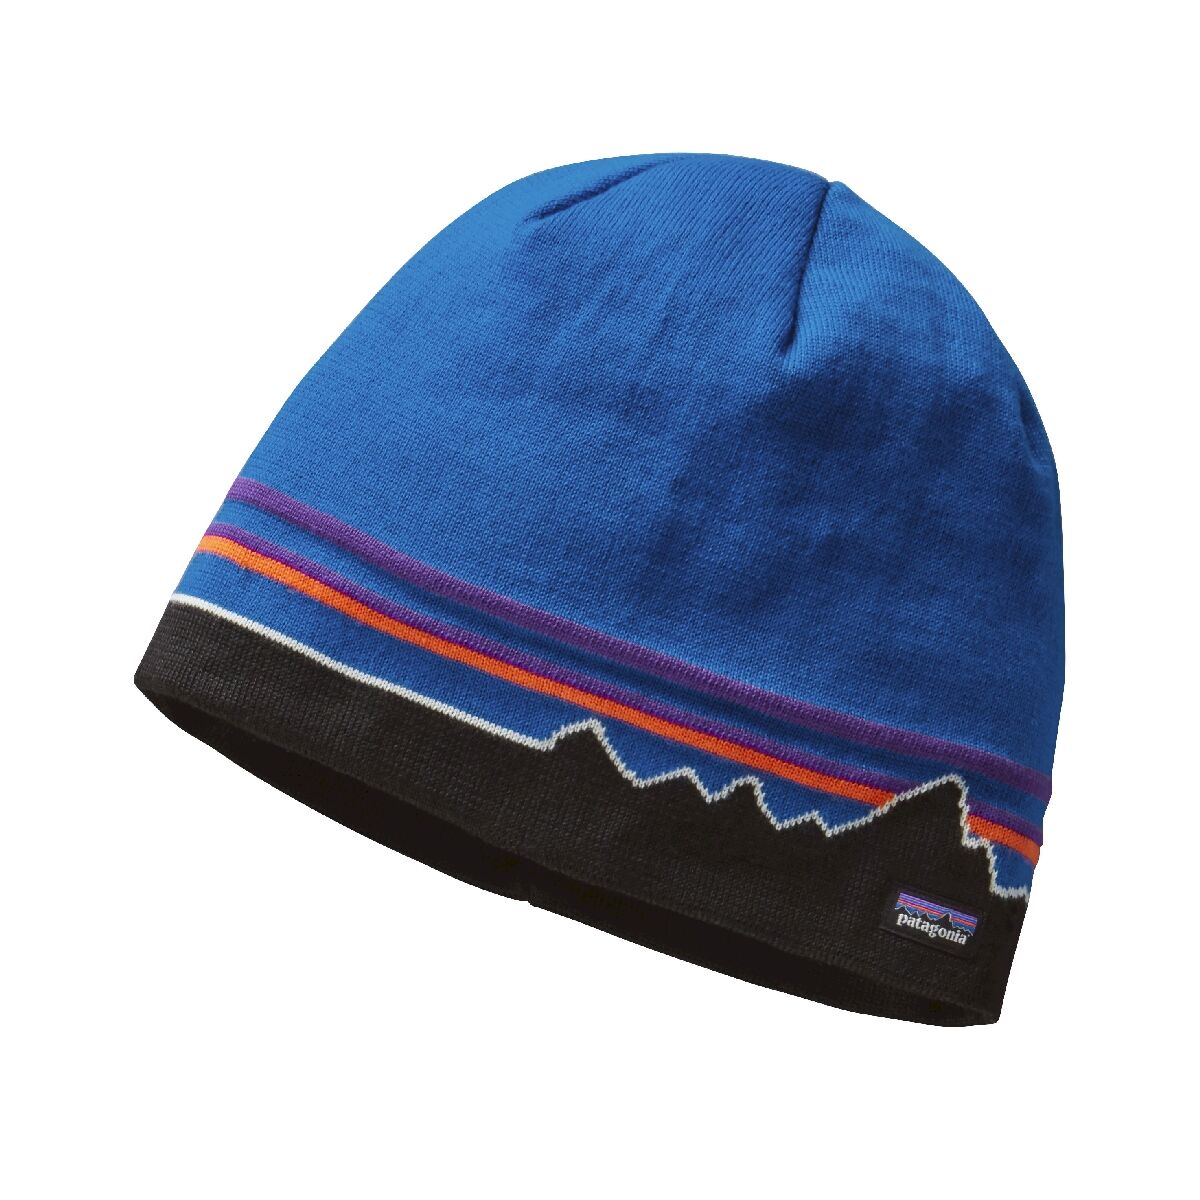 Patagonia Beanie Hat - Mütze